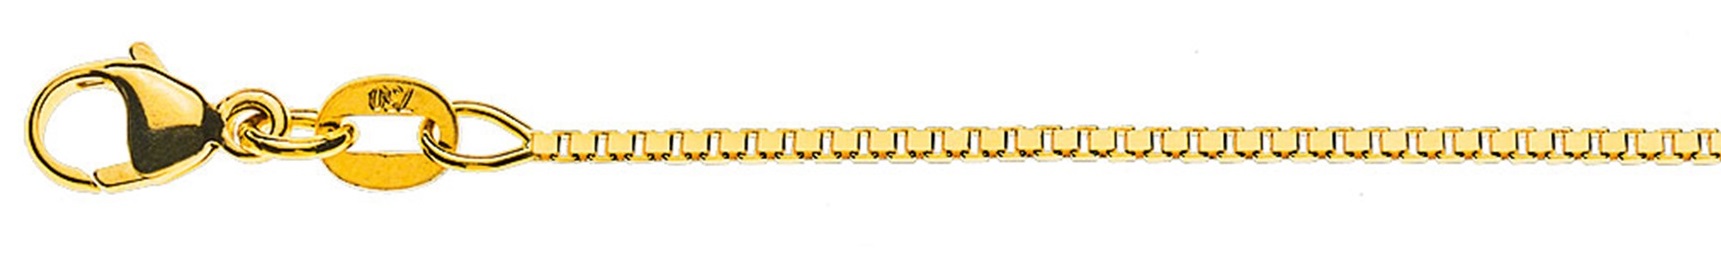 AURONOS Prestige Halskette Gelbgold 18K Venezianerkette diamantiert 45cm 1.1mm